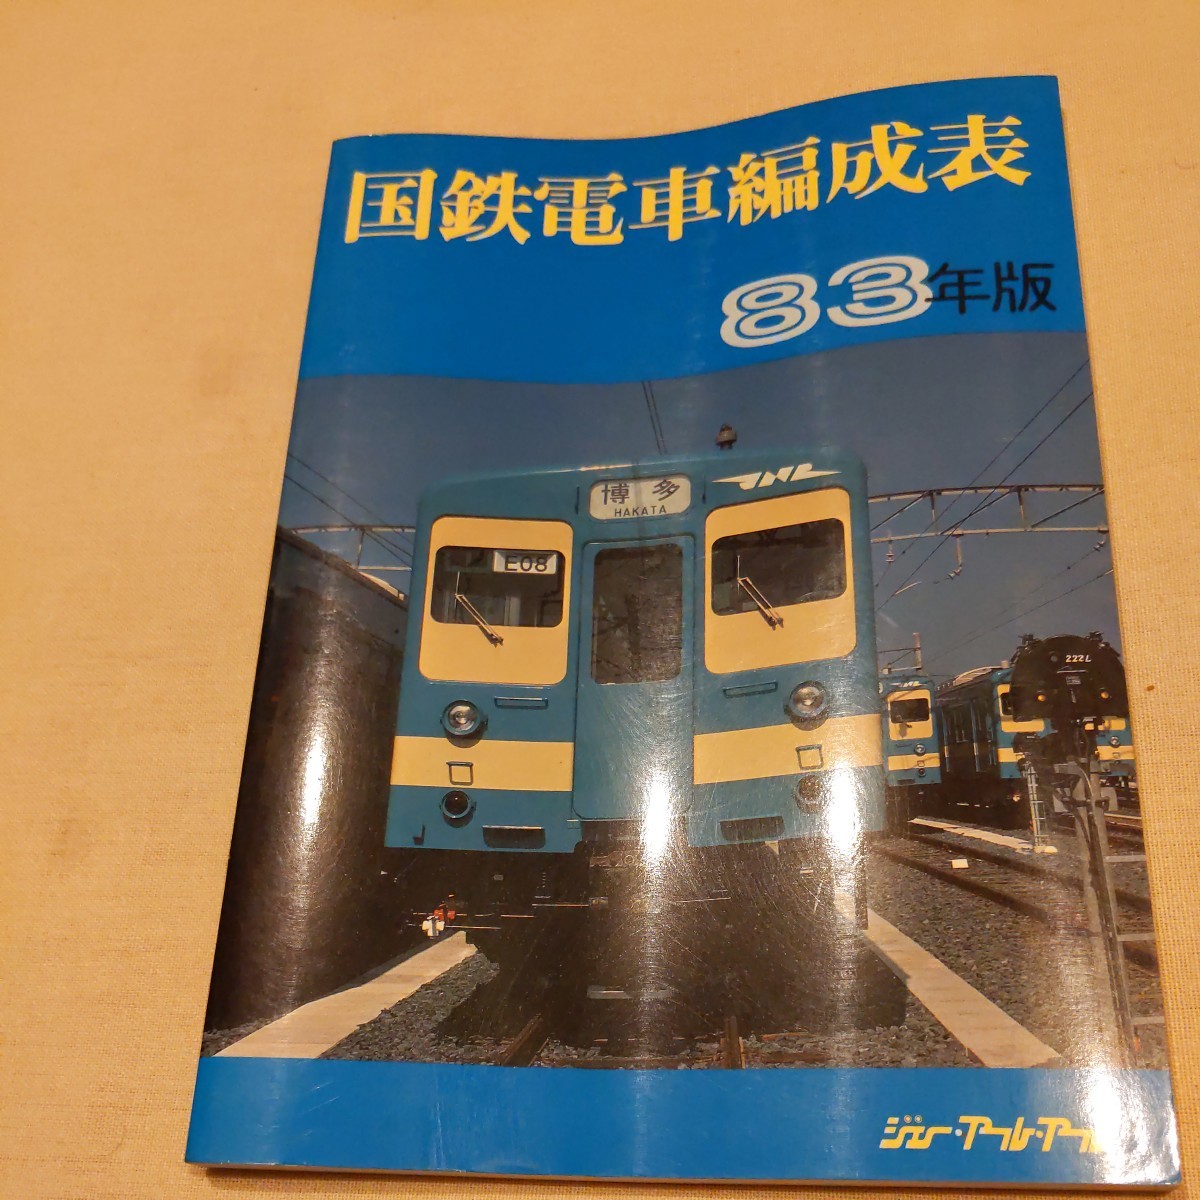 『国鉄電車編成表83年版』ジェー・アール・アール4点送料無料鉄道関係多数出品